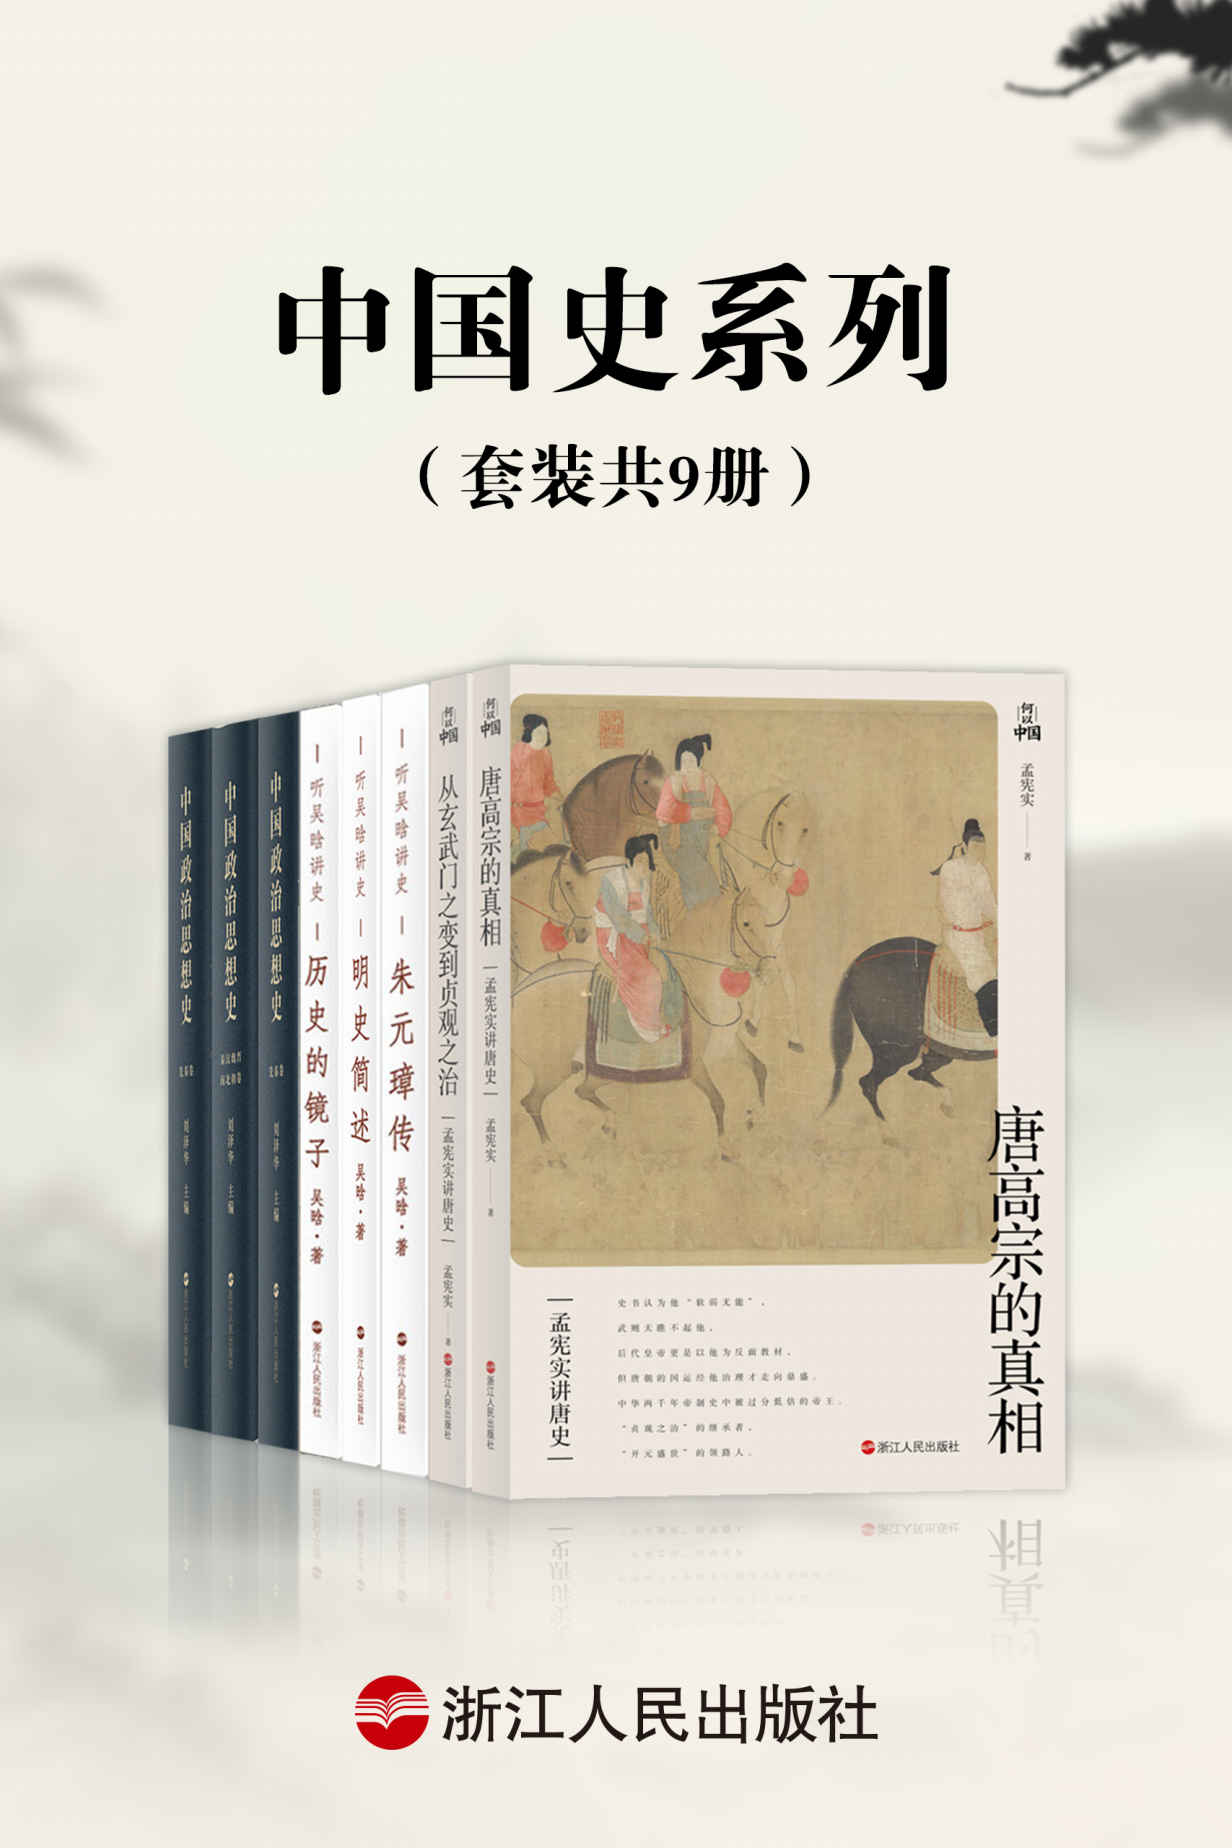 《中国史系列(套装共9册)》-azw3,mobi,epub,pdf,txt,kindle电子书免费下载